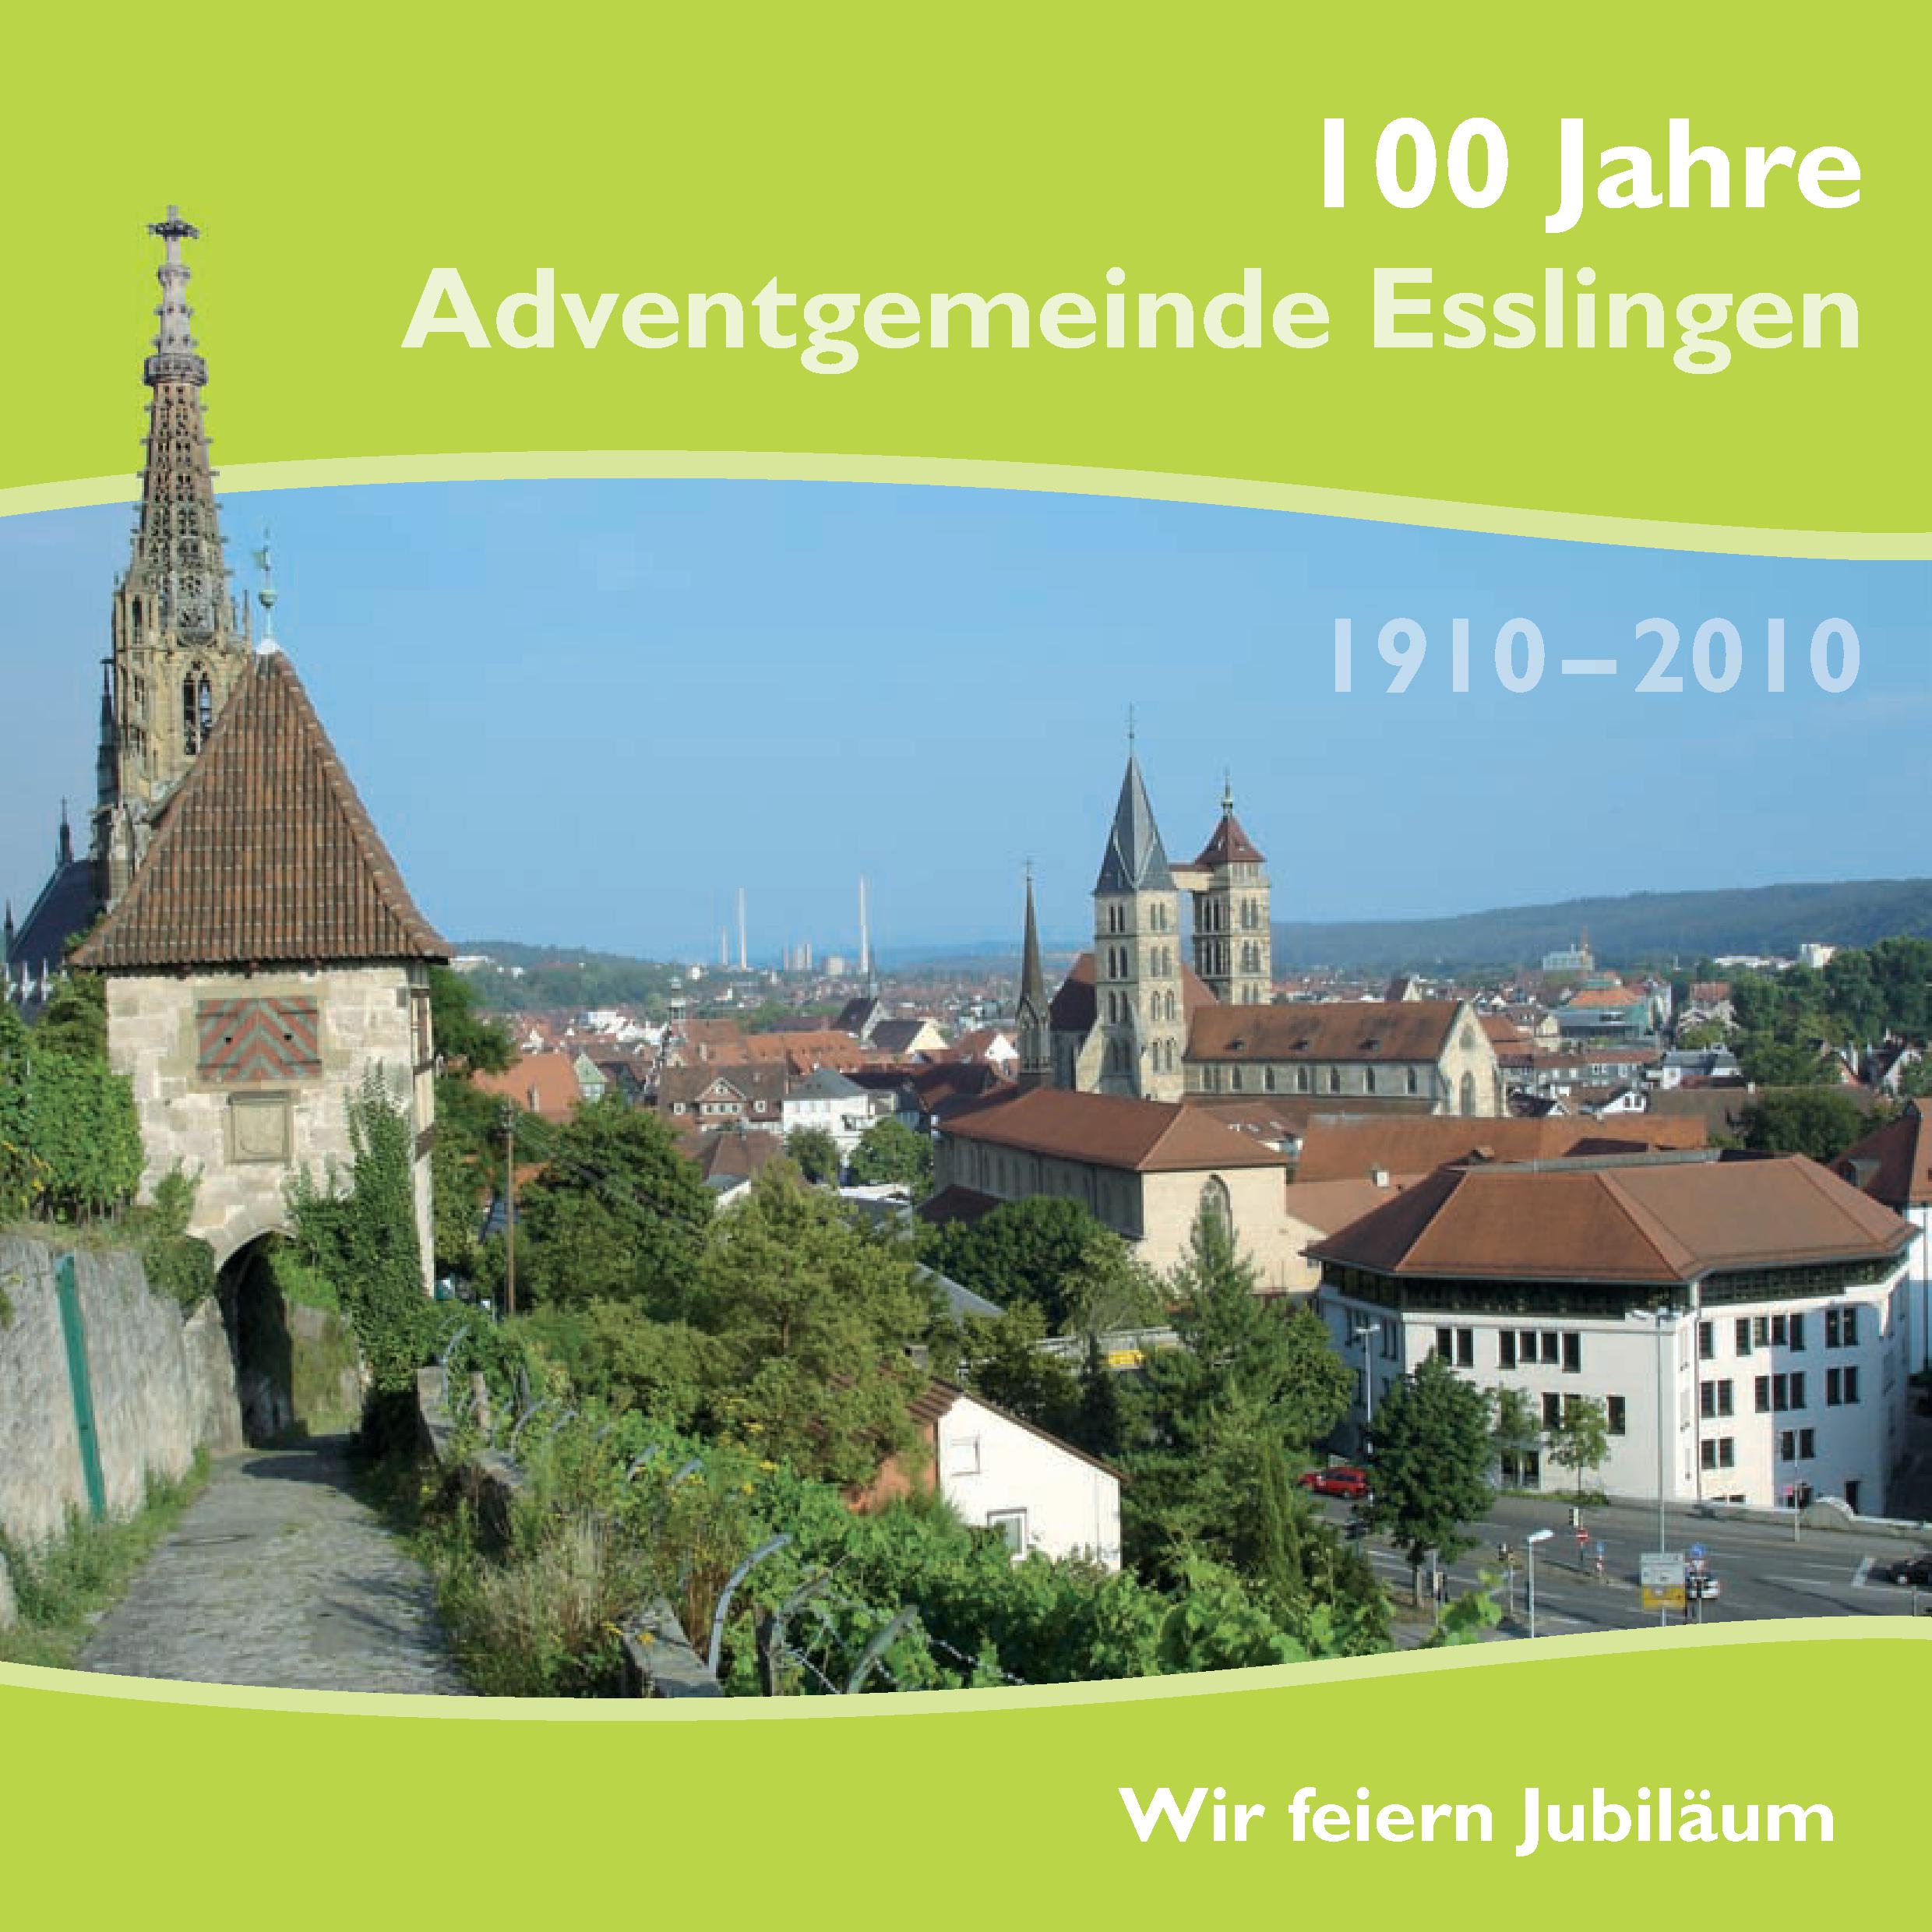 100 Jahre Adventgemeinde Esslingen